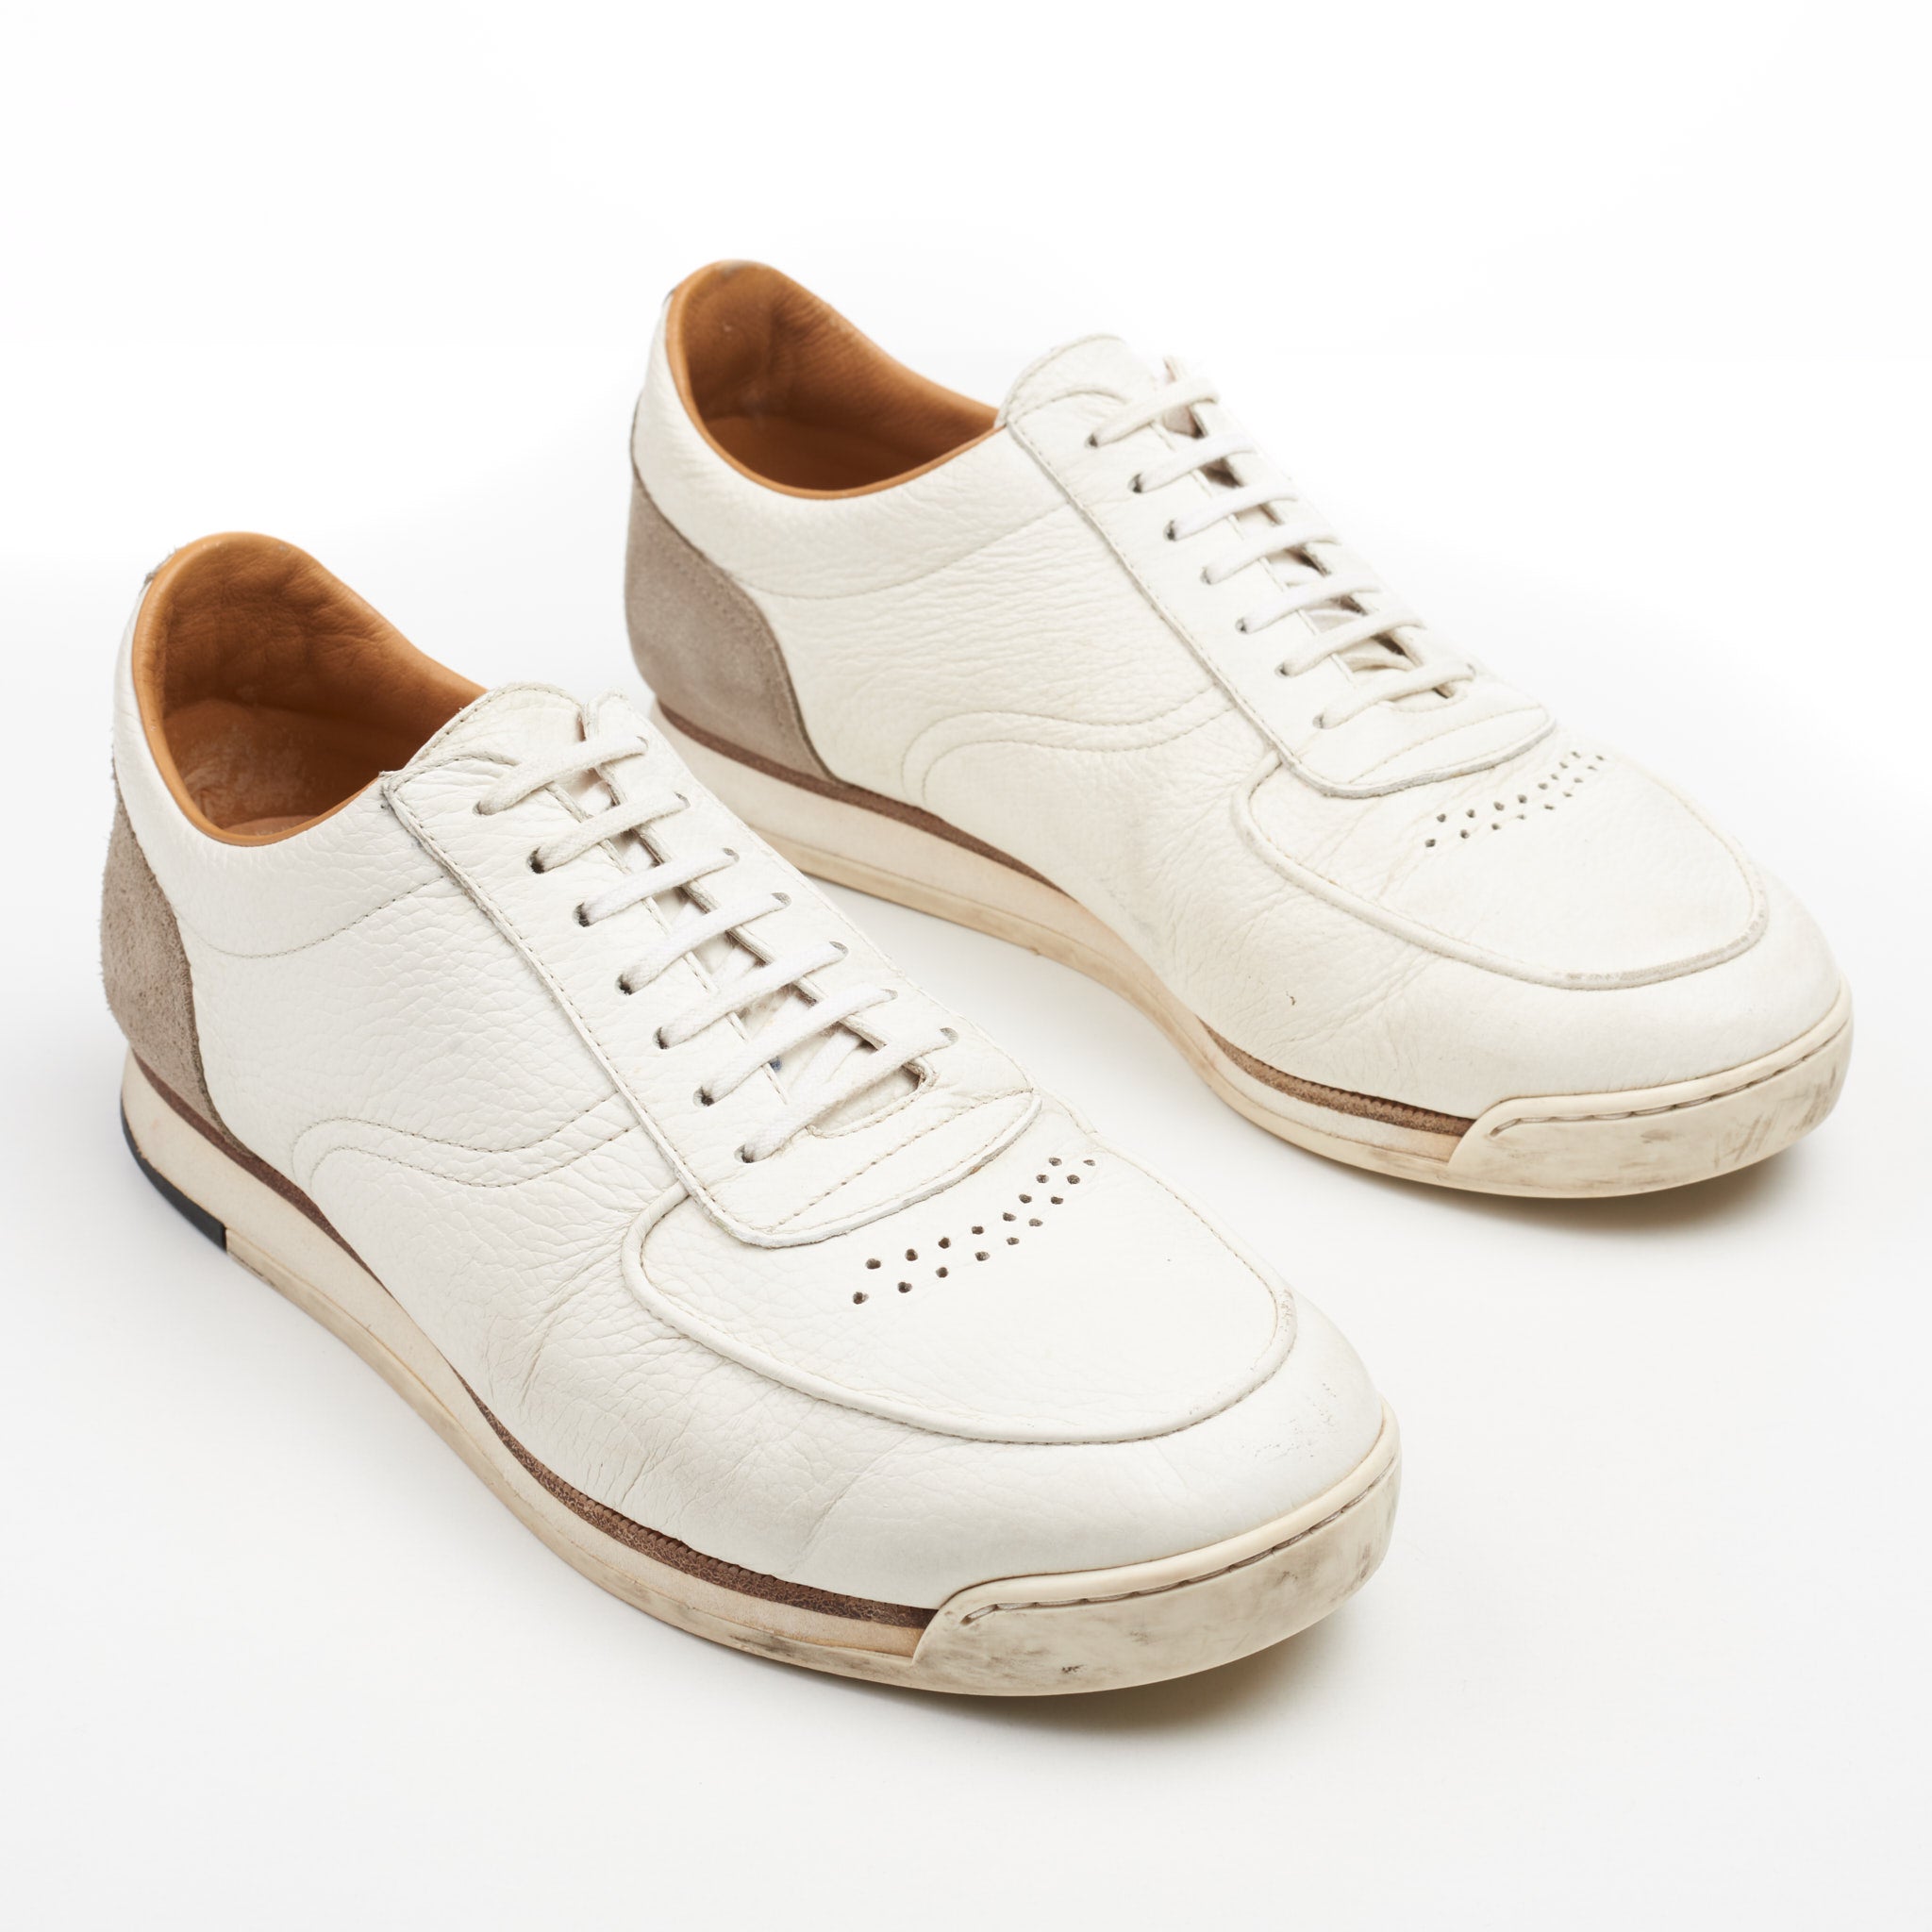 JOHN LOBB "Porth" White Full Grain Leather Lace-up Sneakers Shoes UK 7.5 US 8.5 JOHN LOBB